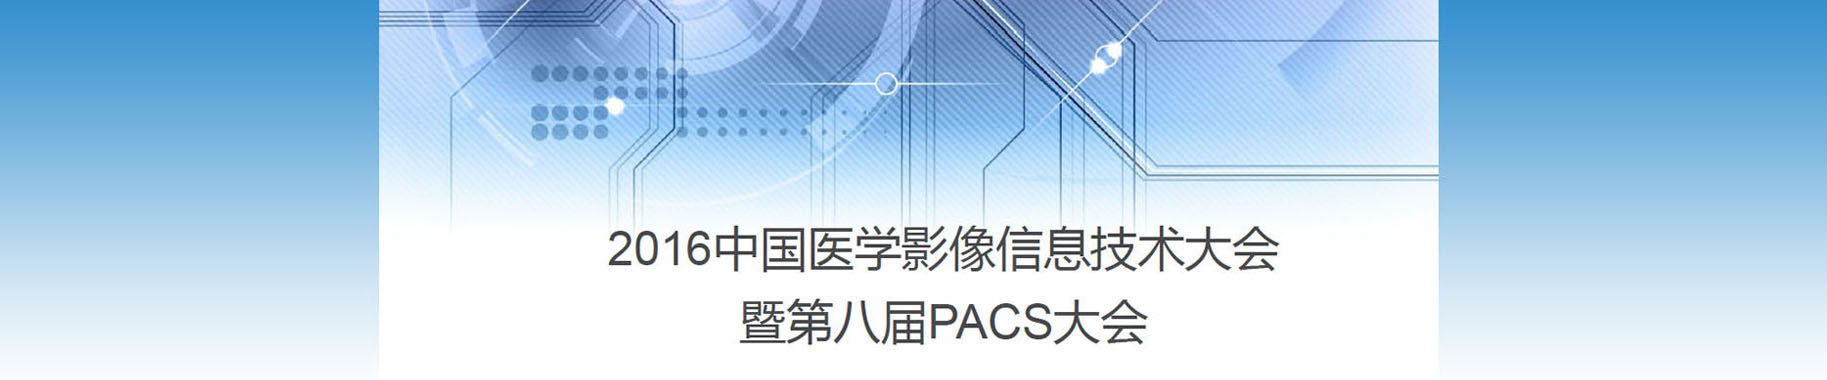 关于召开“2016中国医学影像信息技术大会暨第八届中国PACS大会”的函(图1)